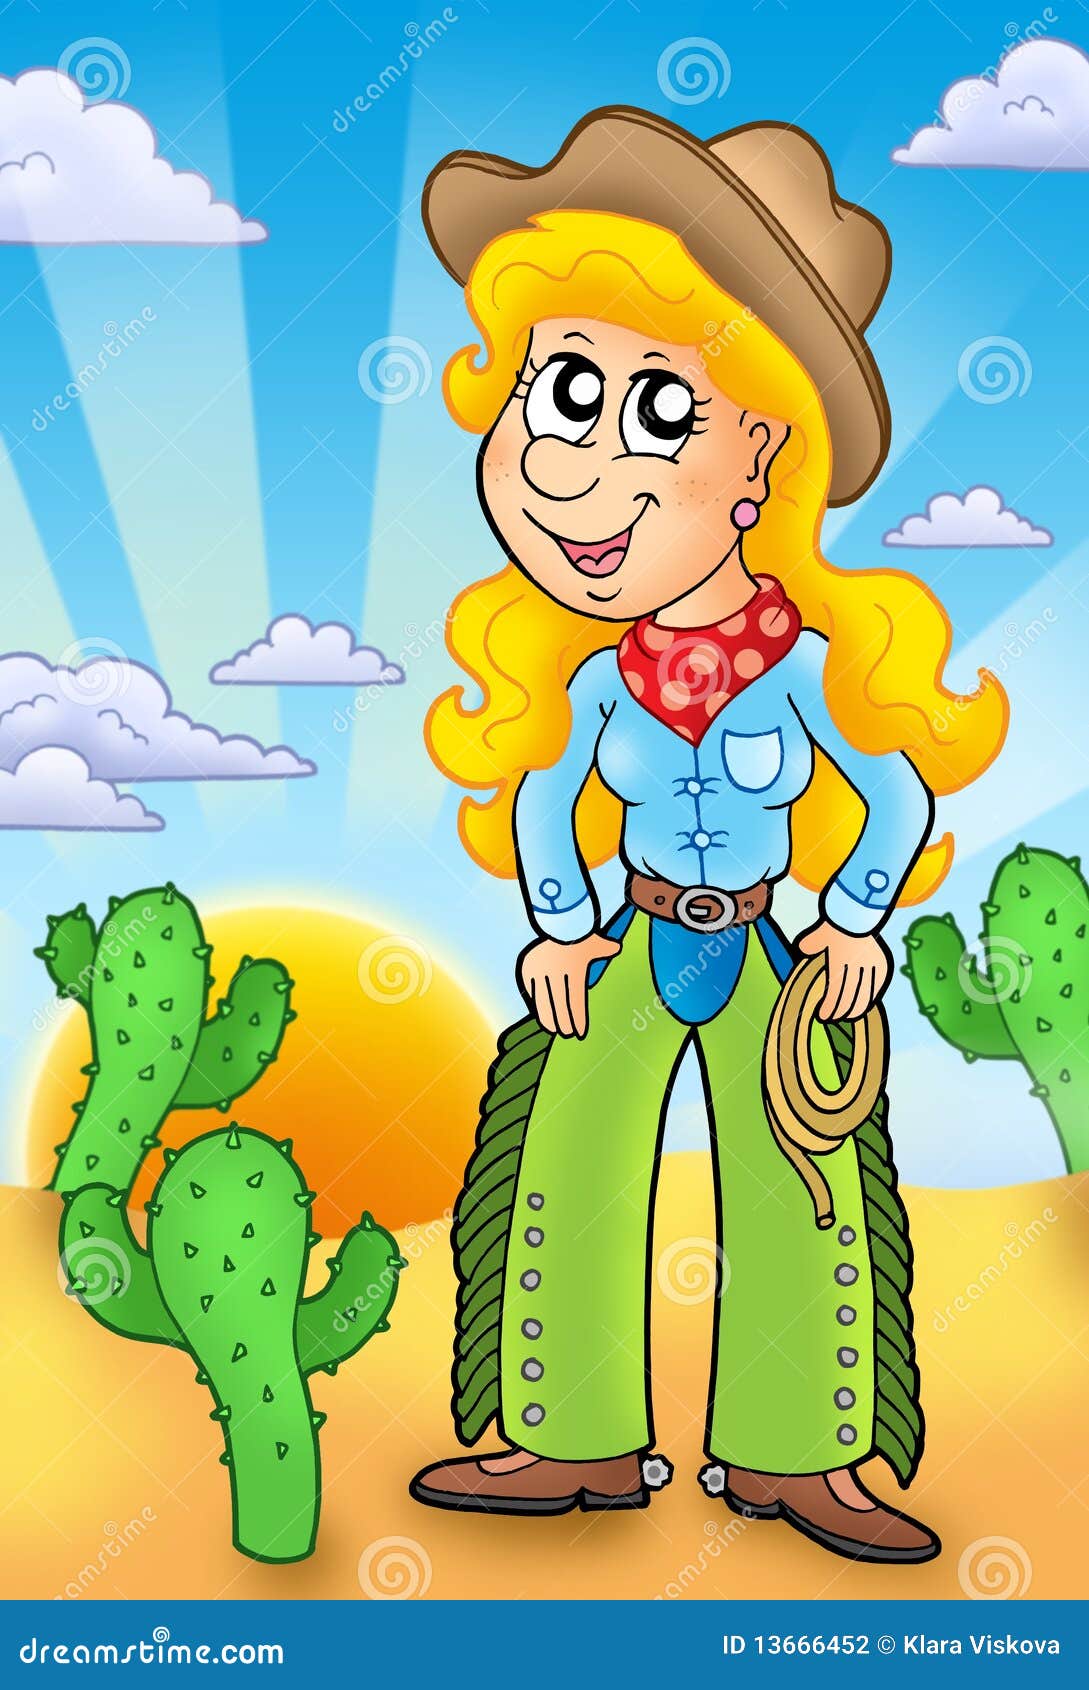 redneck girl cartoon